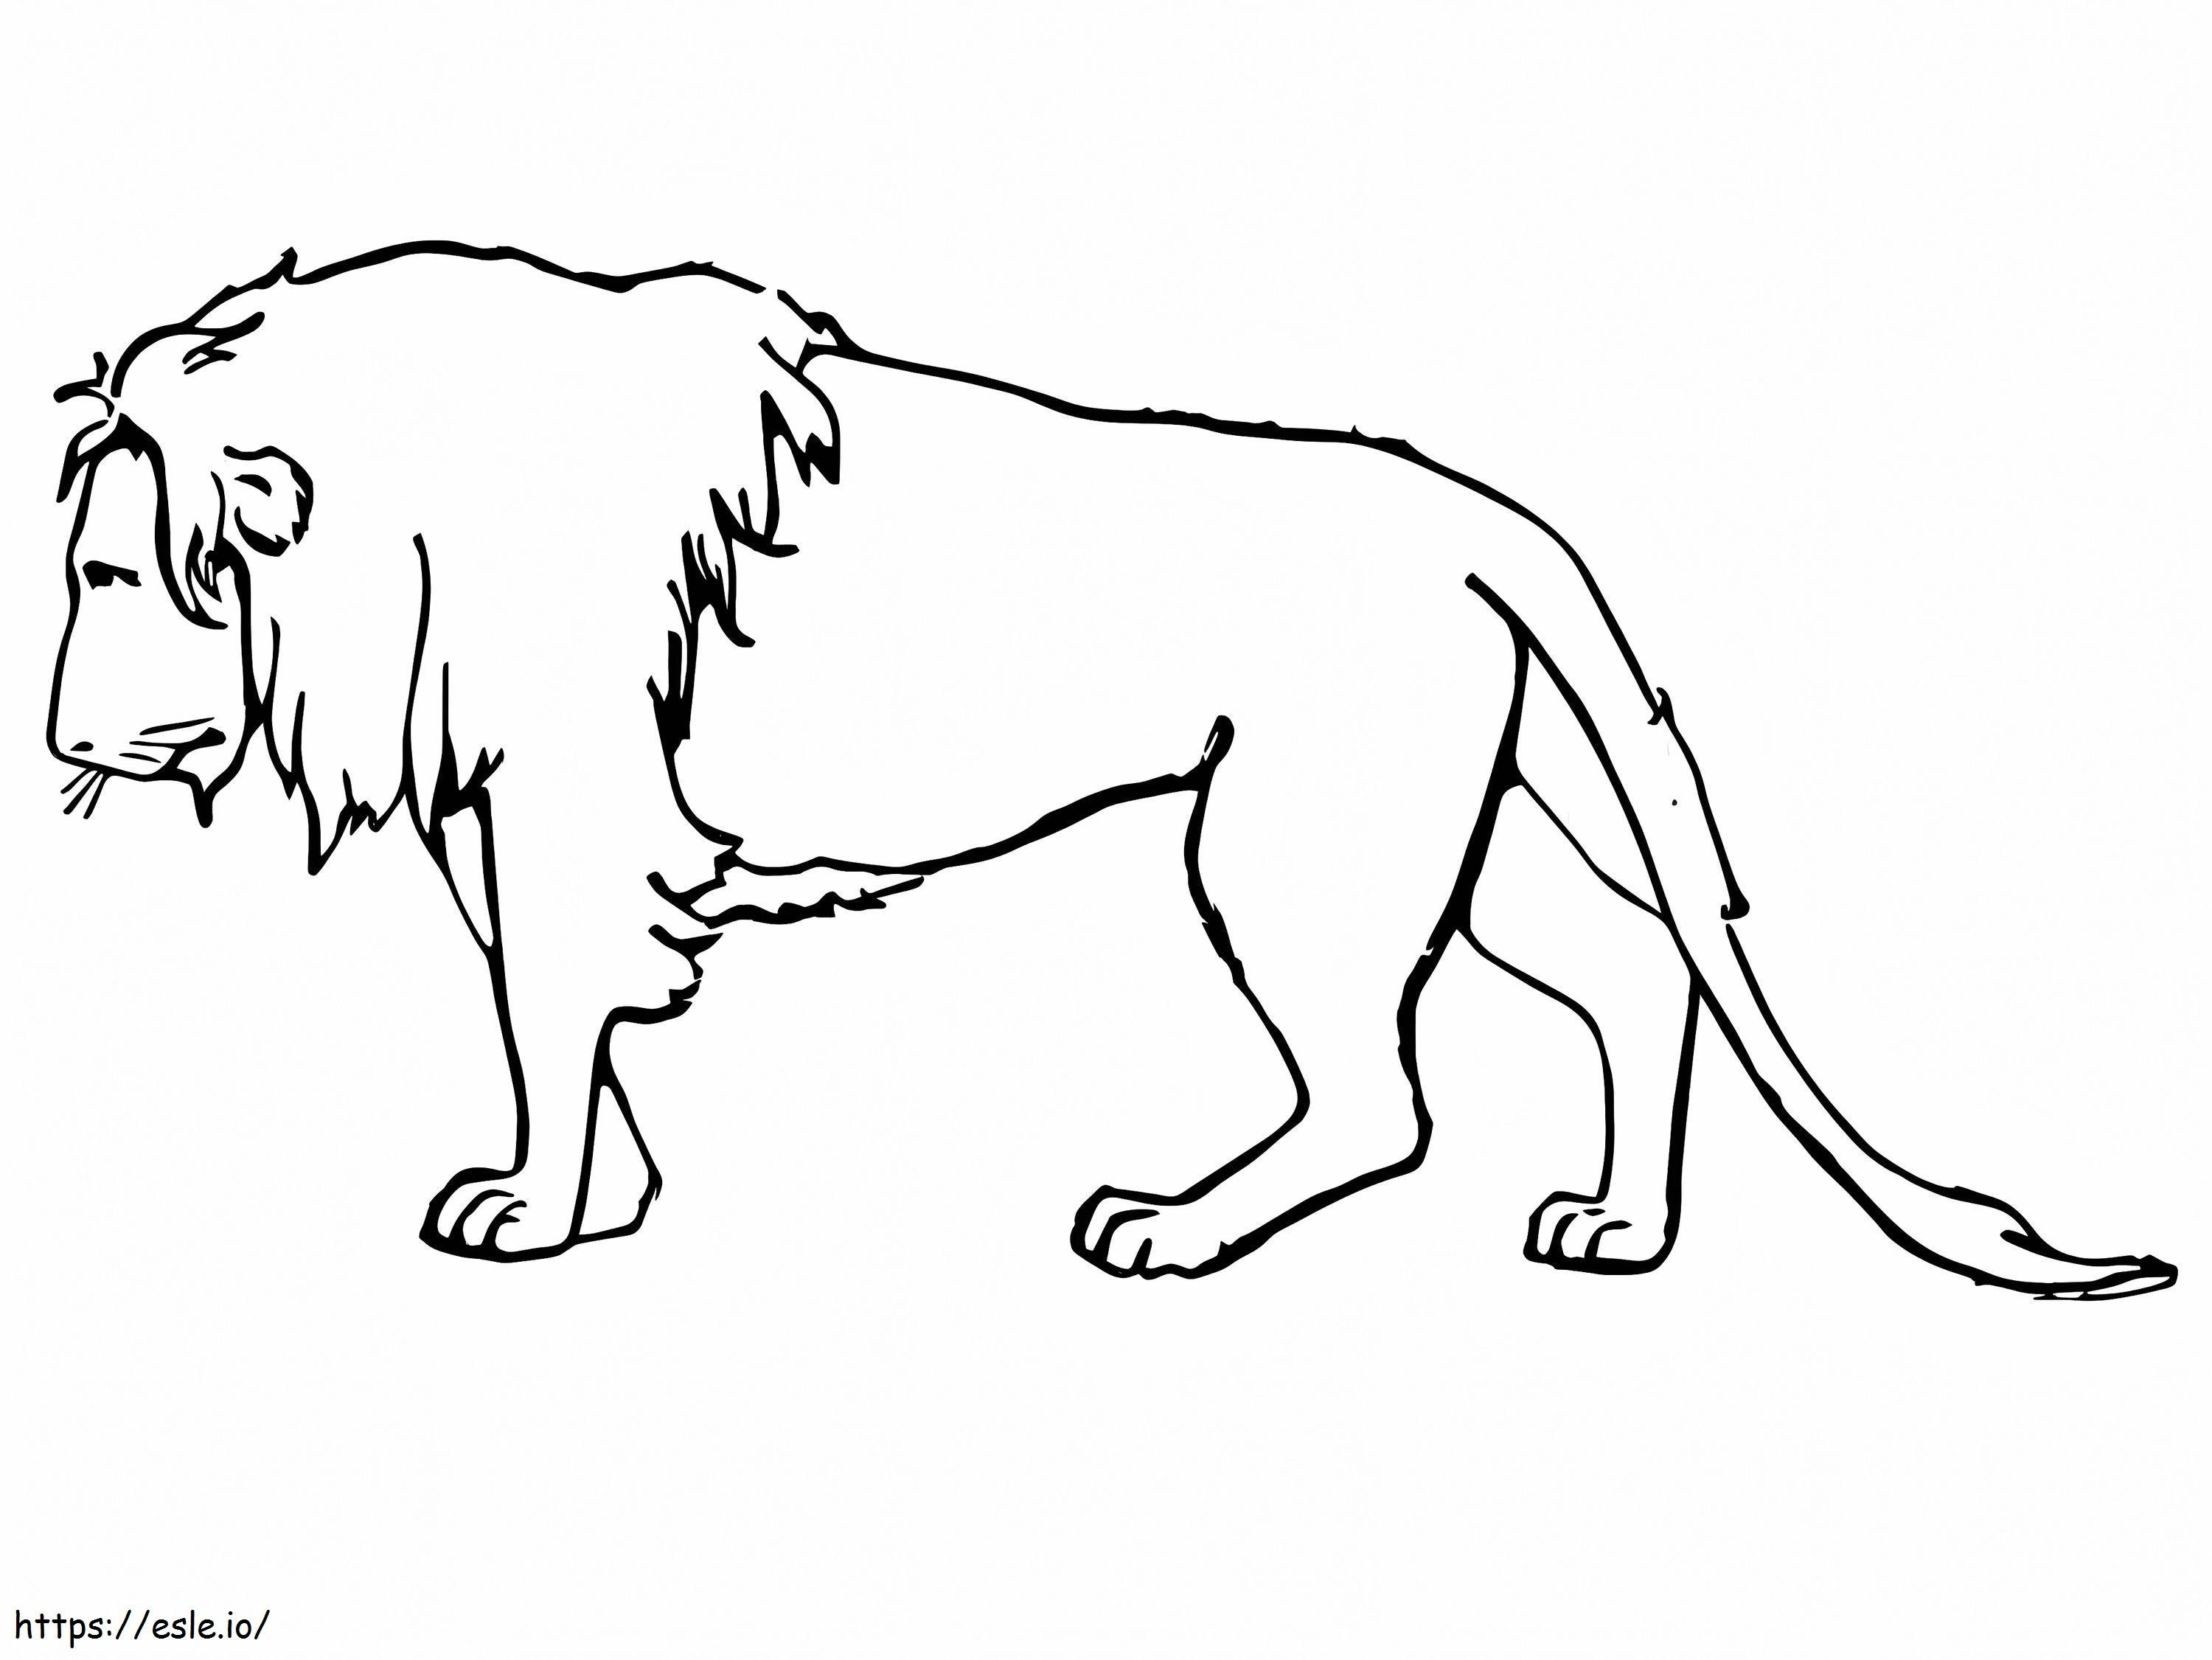 Sad Lion coloring page